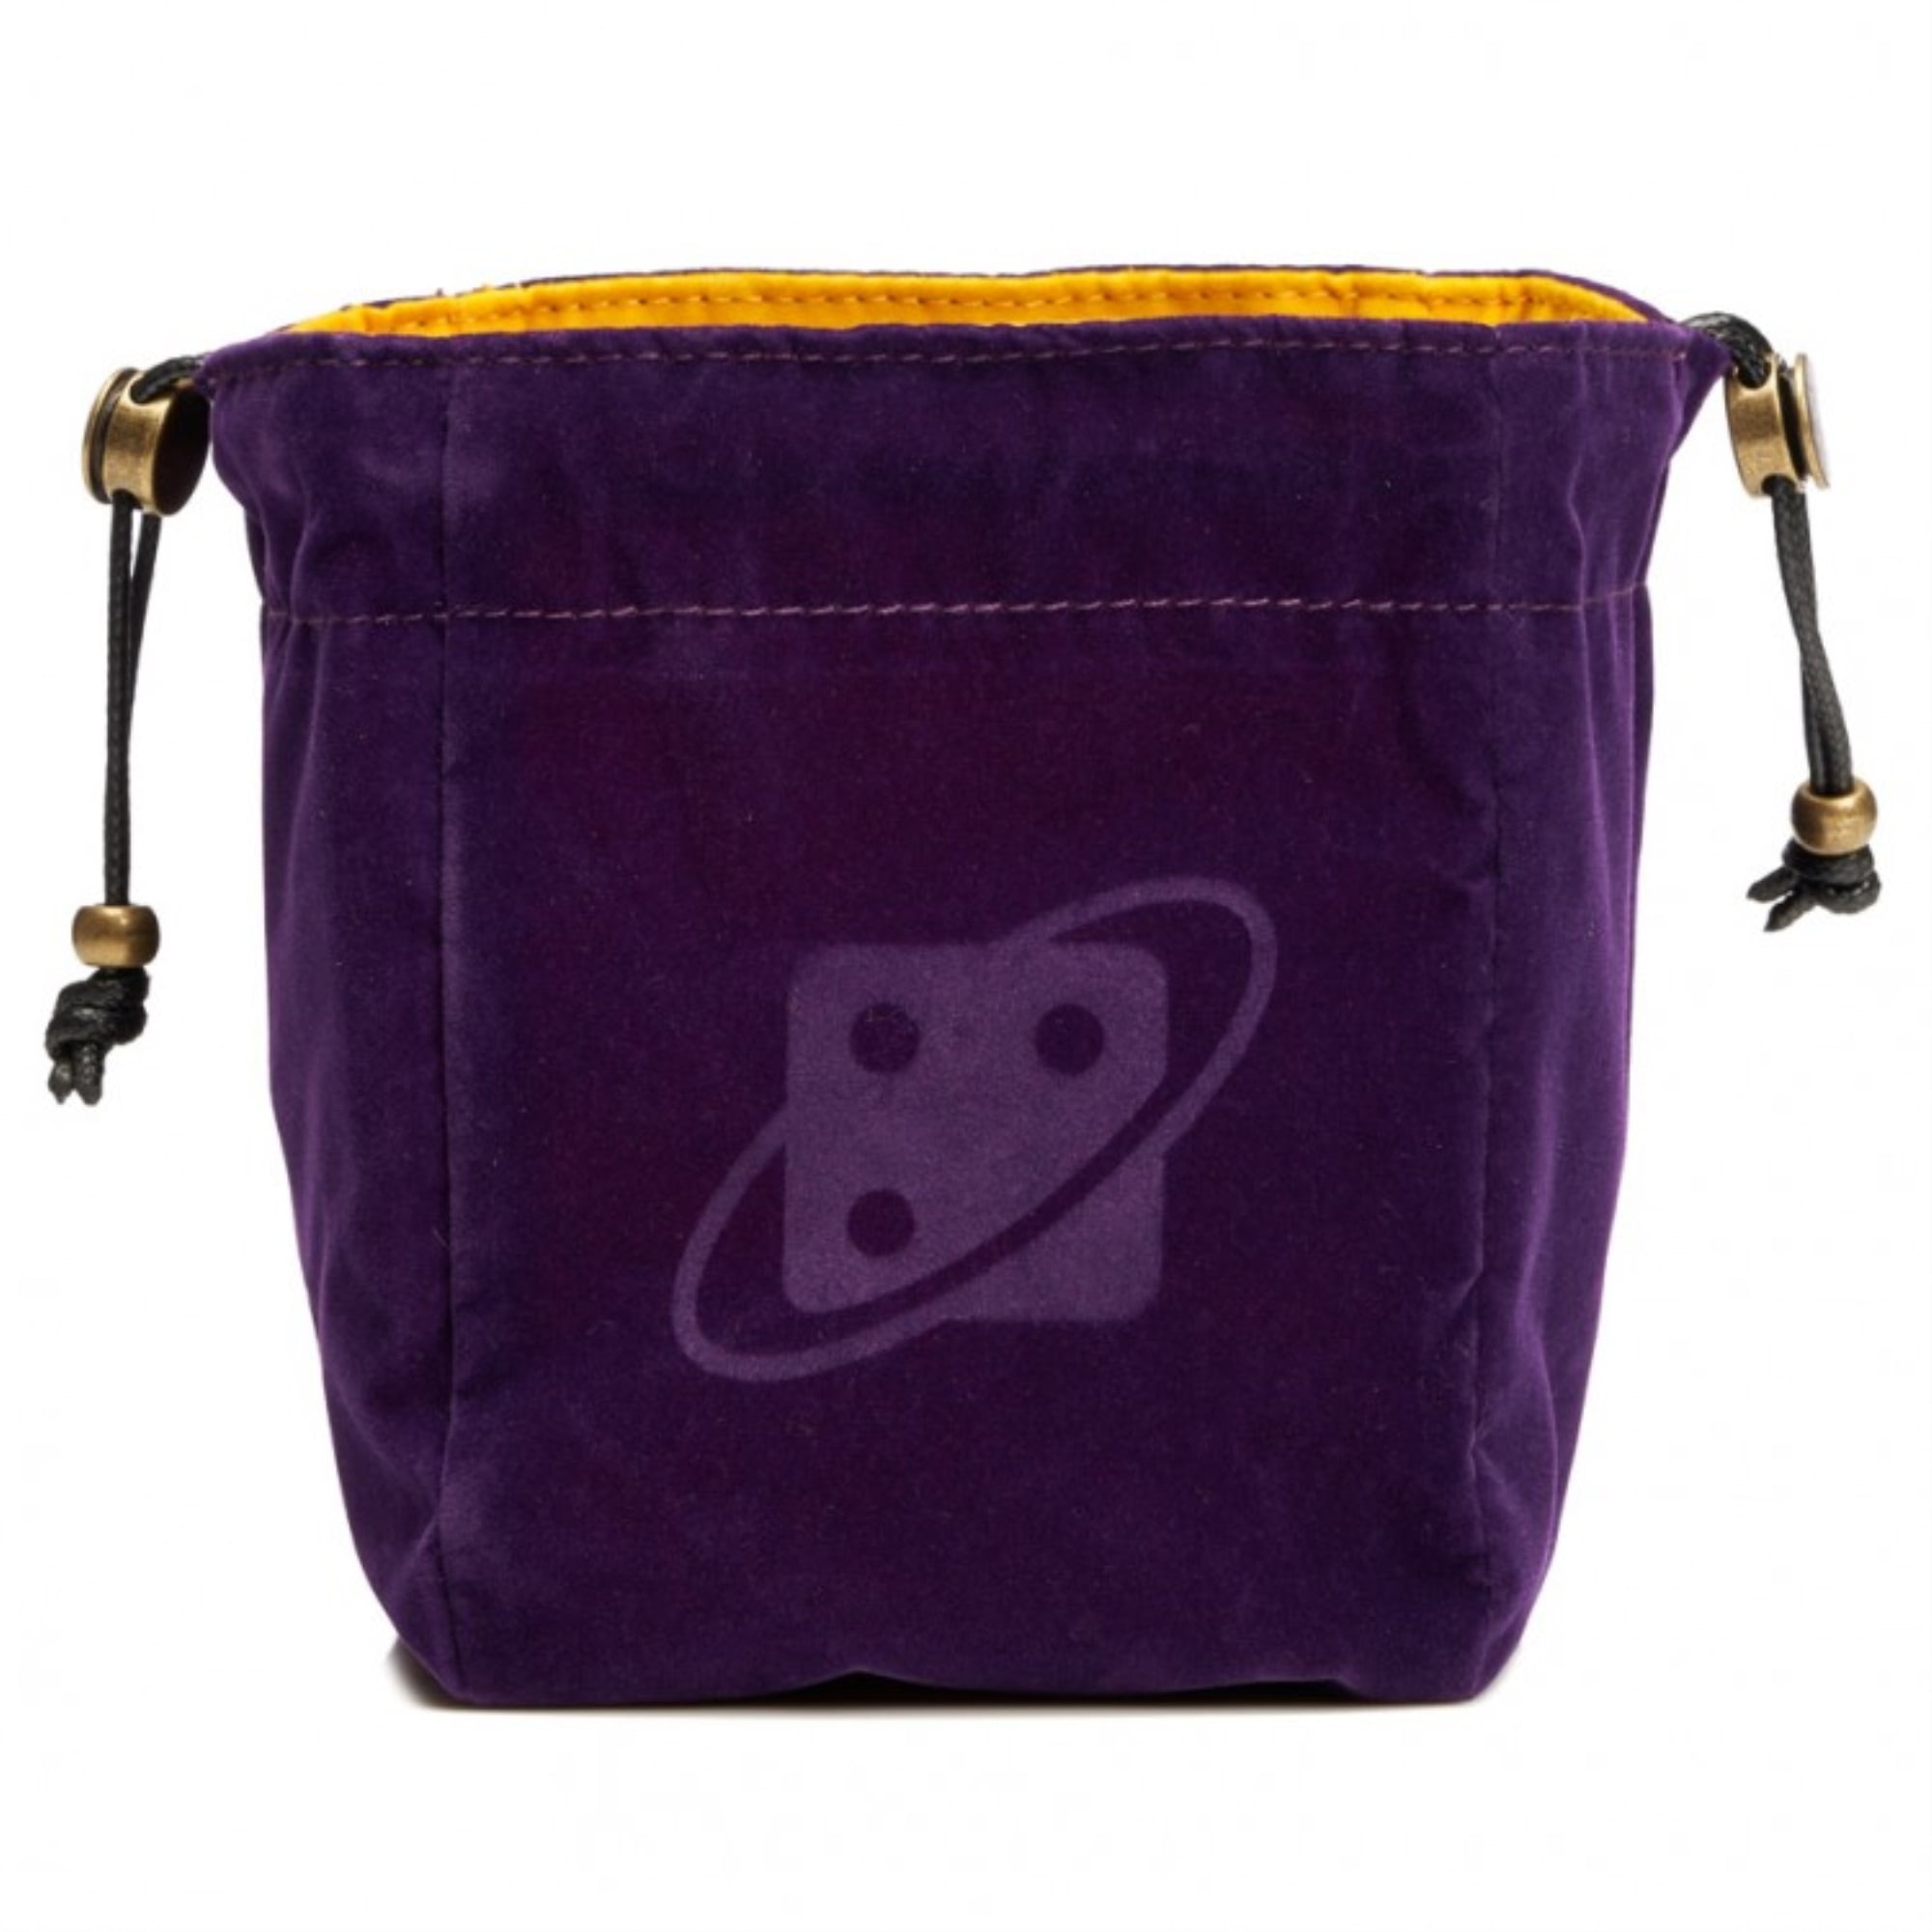 Sdz000001 Dice Bag - Reversible - Purple & Gold